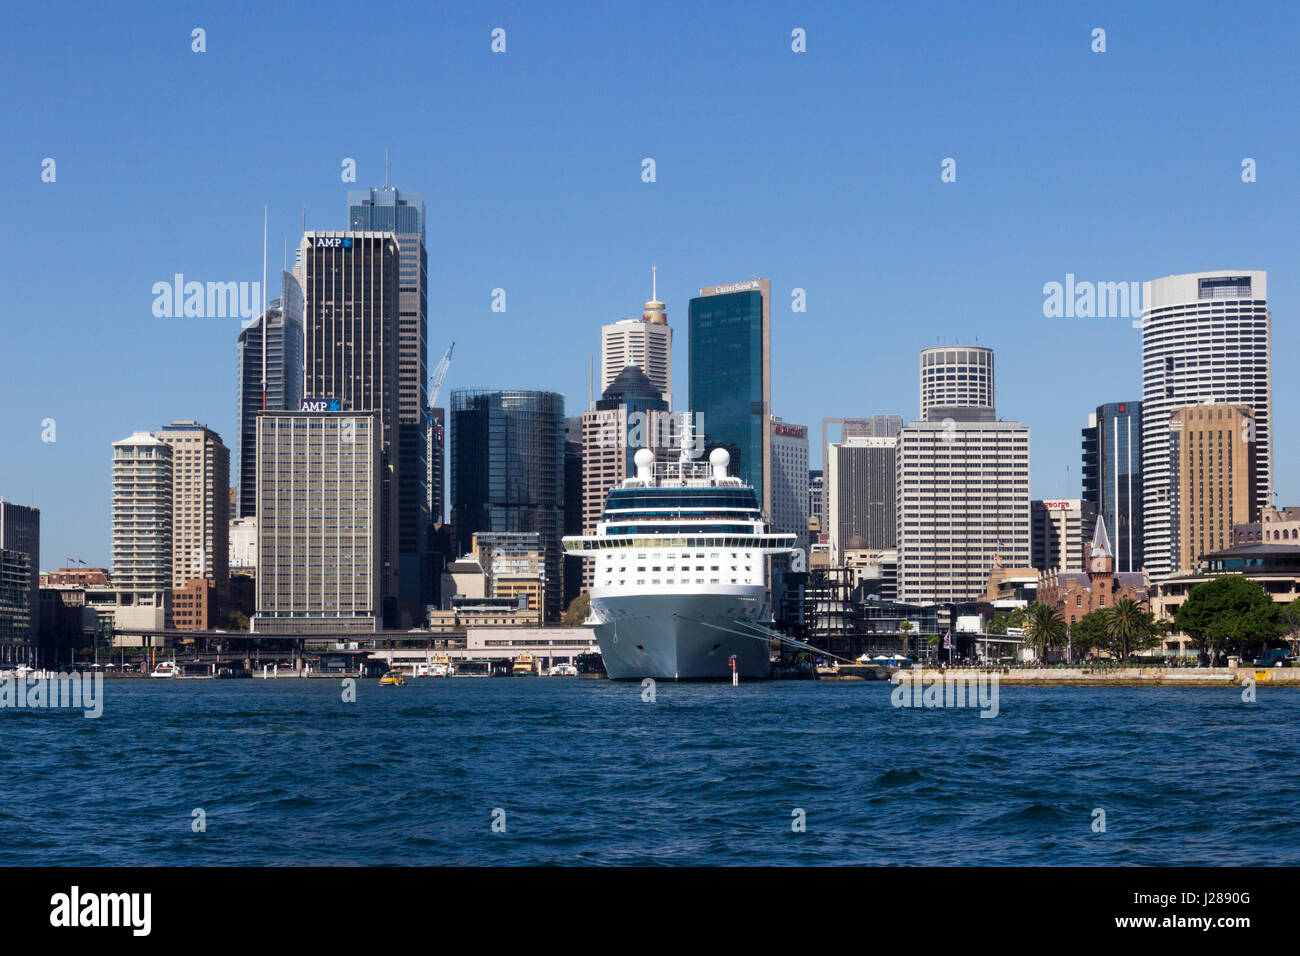 Bateau de croisière amarré dans le port de Sydney avec le Central Business District derrière, New South Wales, Australie Banque D'Images